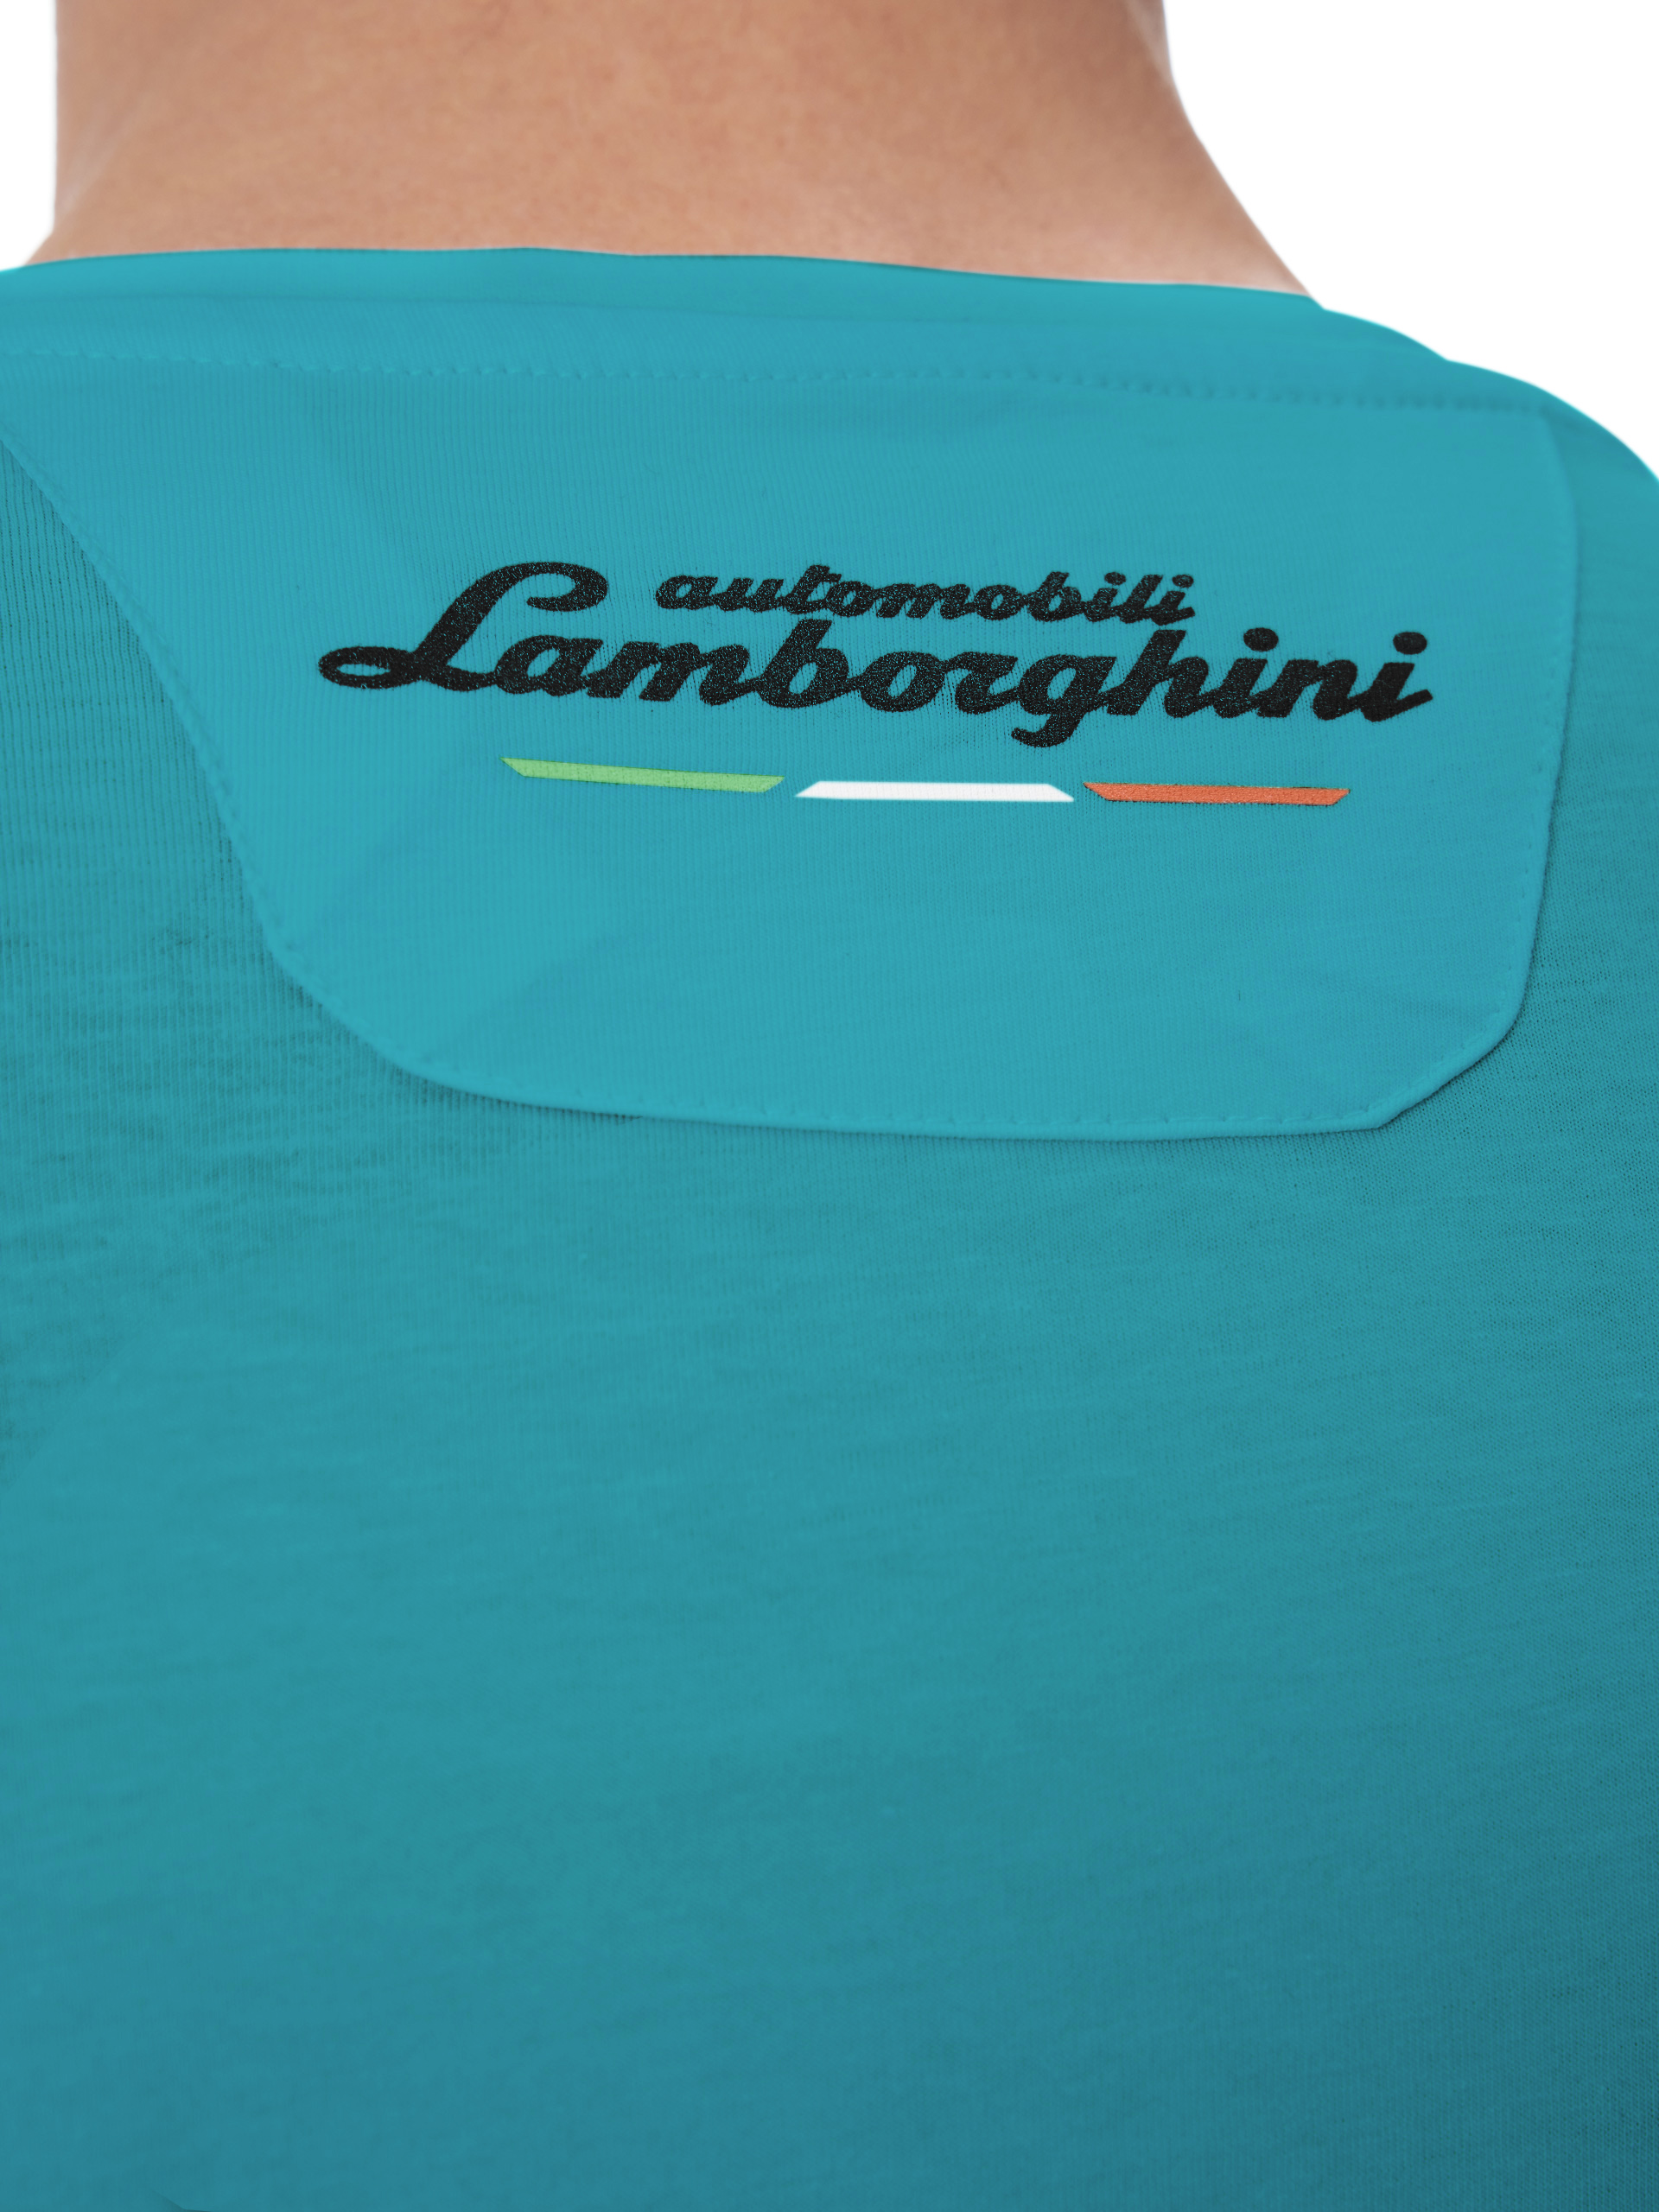 Automobili Lamborghini Iconic Small Shield Crew Neck T-shirt